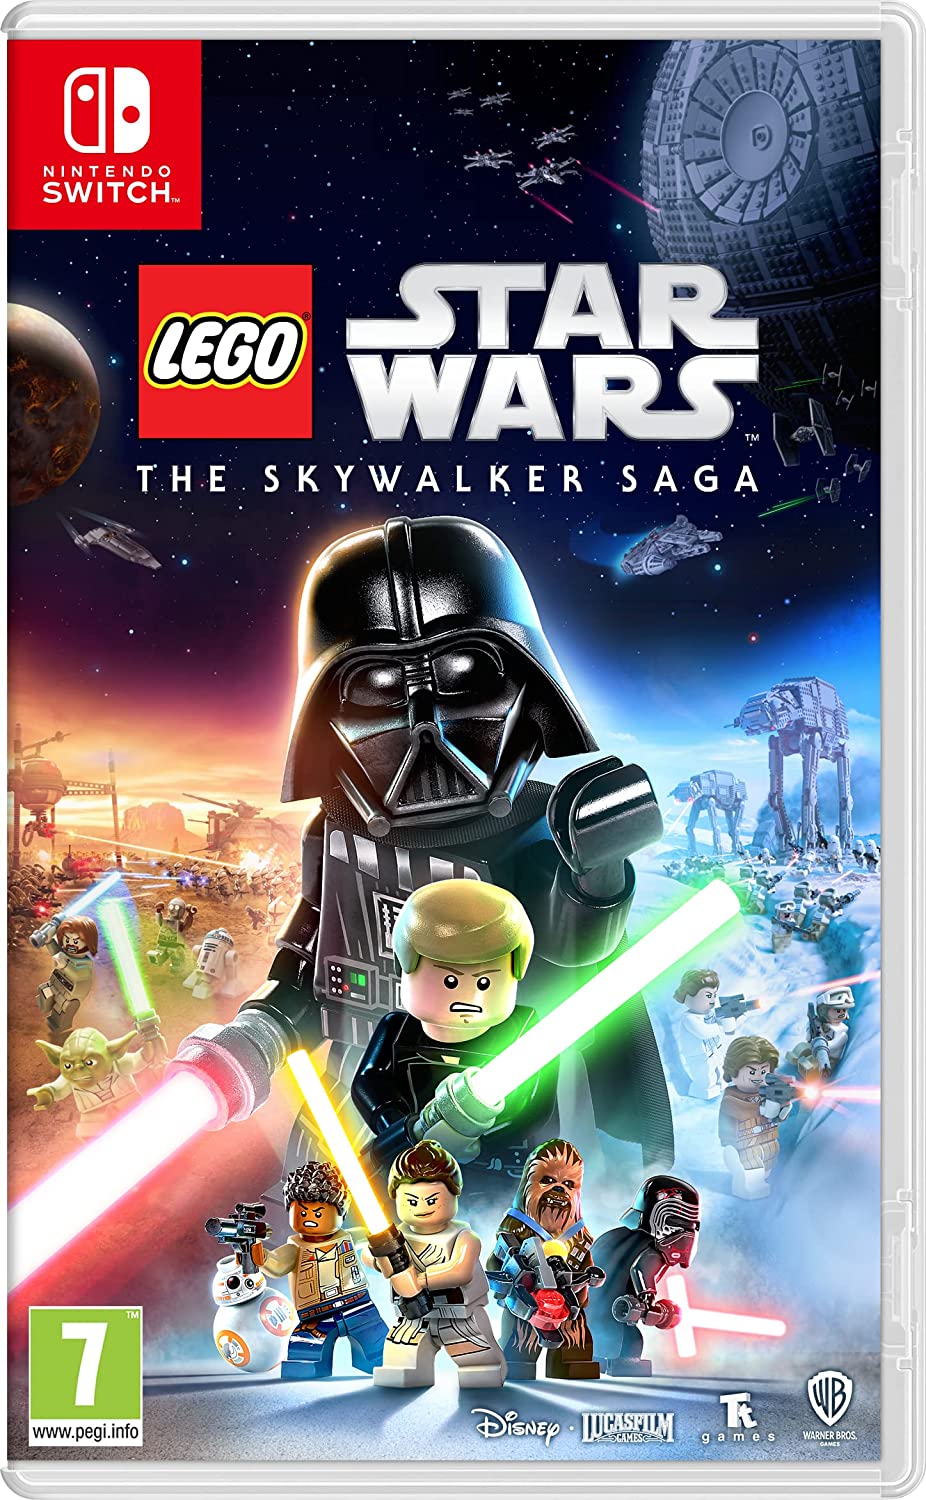 LEGO Star Wars pour Nintendo Switch.